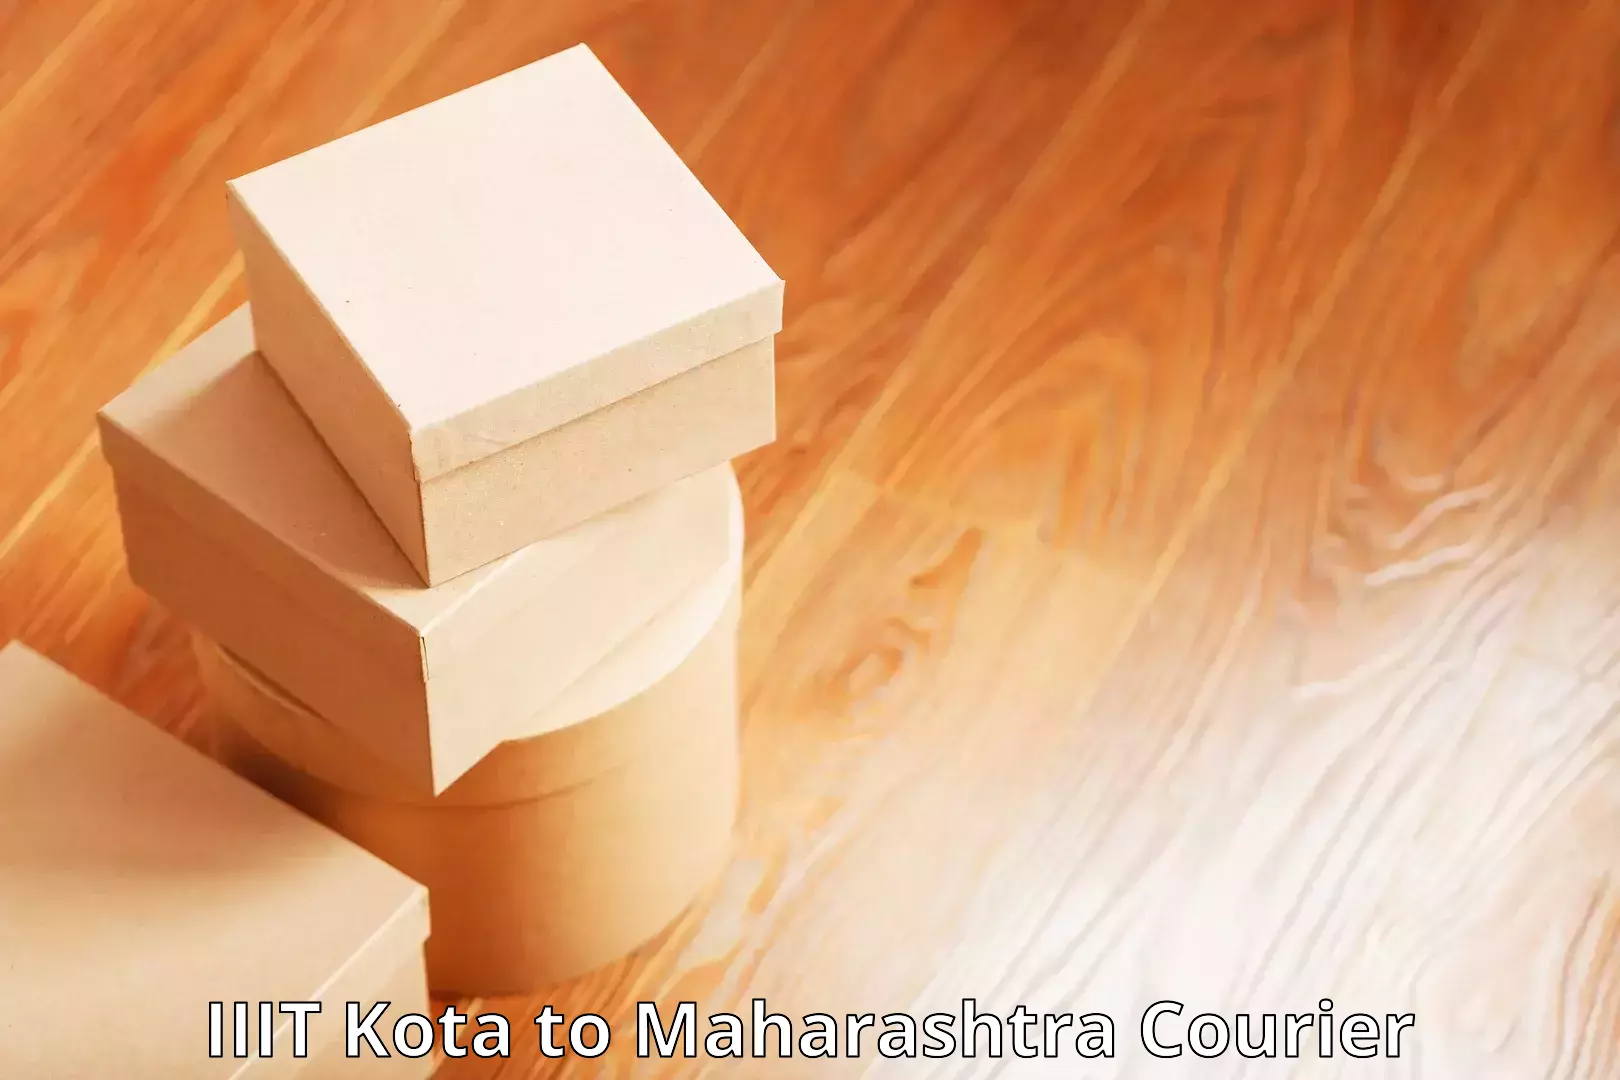 Package delivery network in IIIT Kota to Jintur